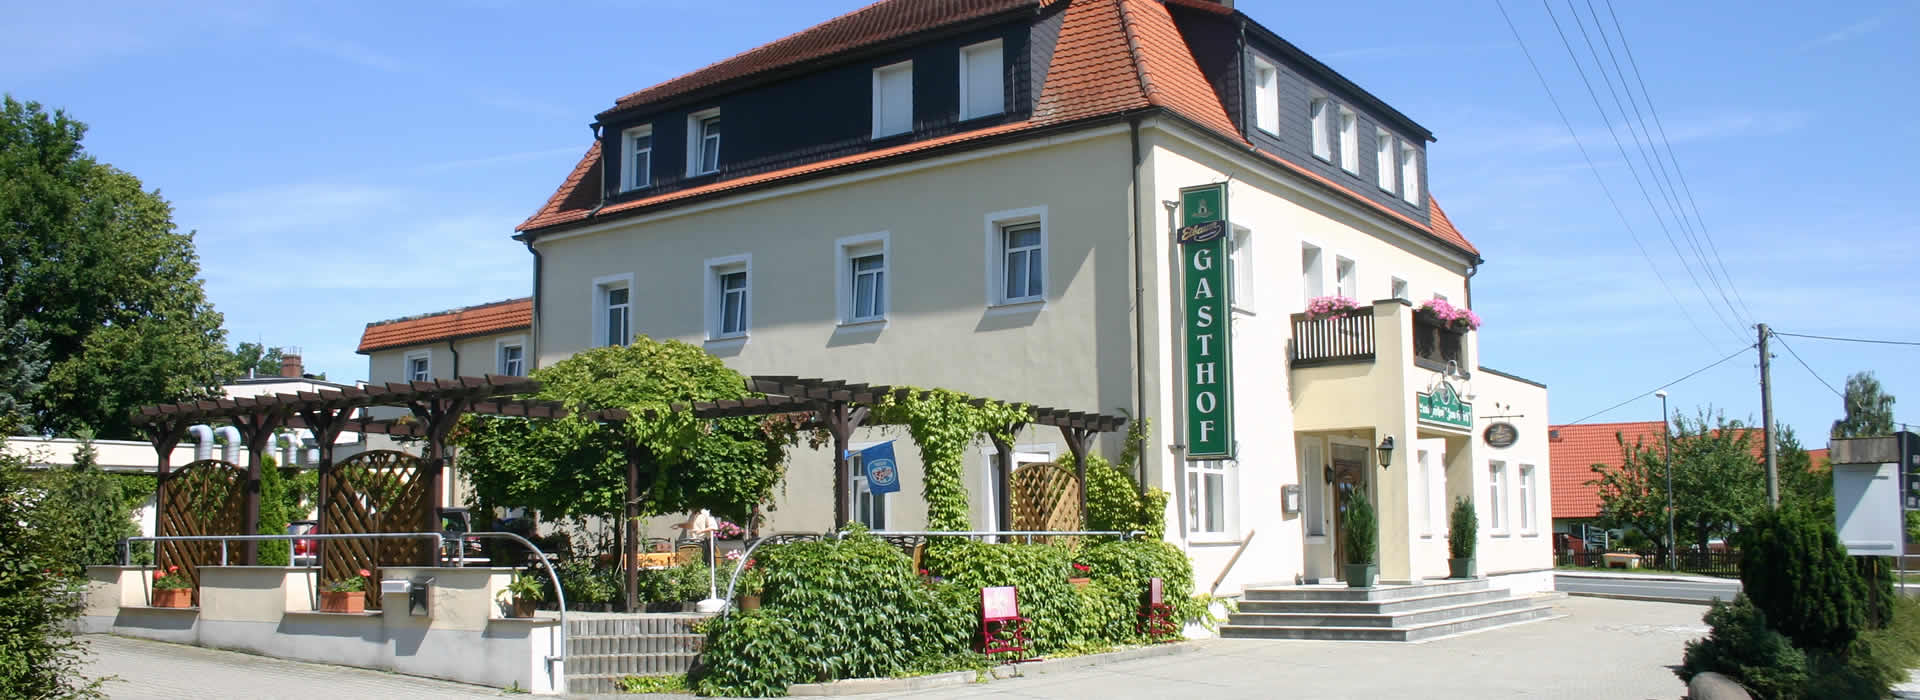 Landgasthof Hotel "Zum Hirsch"